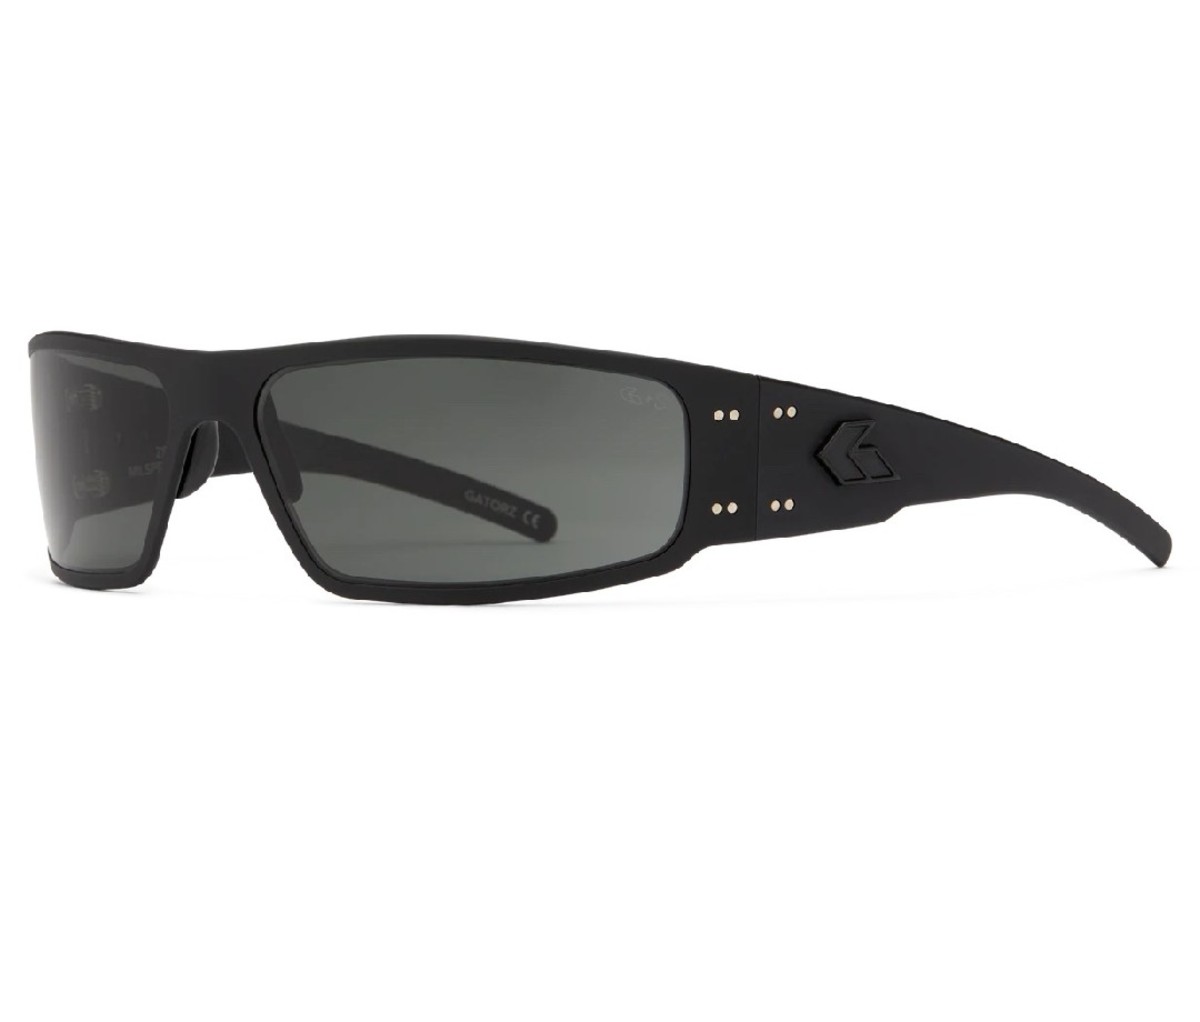 Pair of black Gatorz Milspec Ballistic Magnum Sunglasses